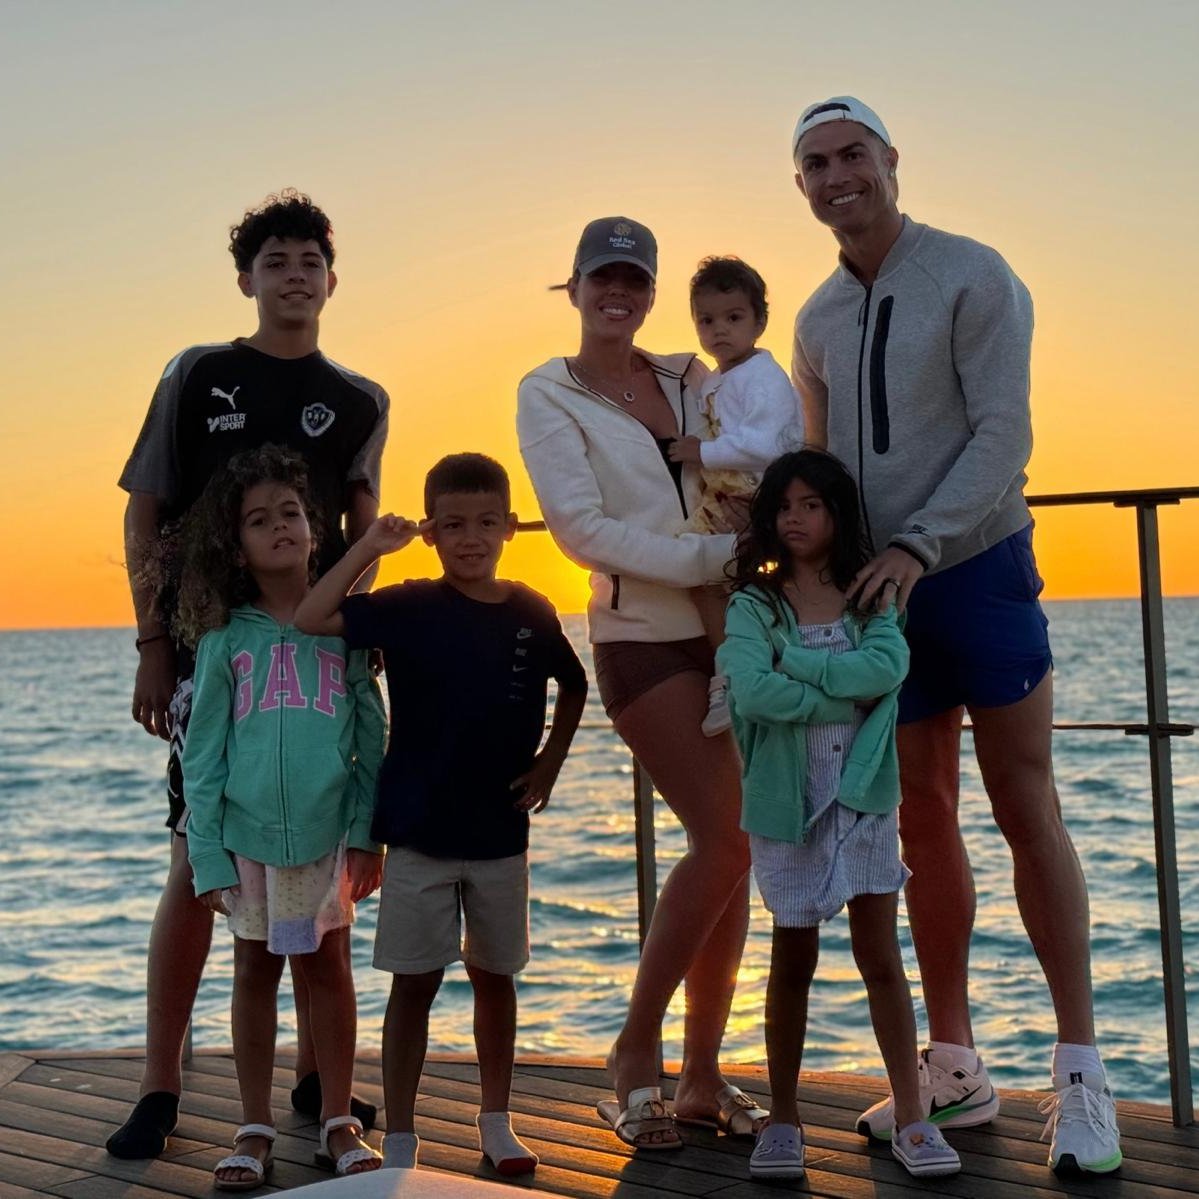 Ronaldo's Family Beach Day: A Glimpse into Their Joyful Time at a Saudi Beach